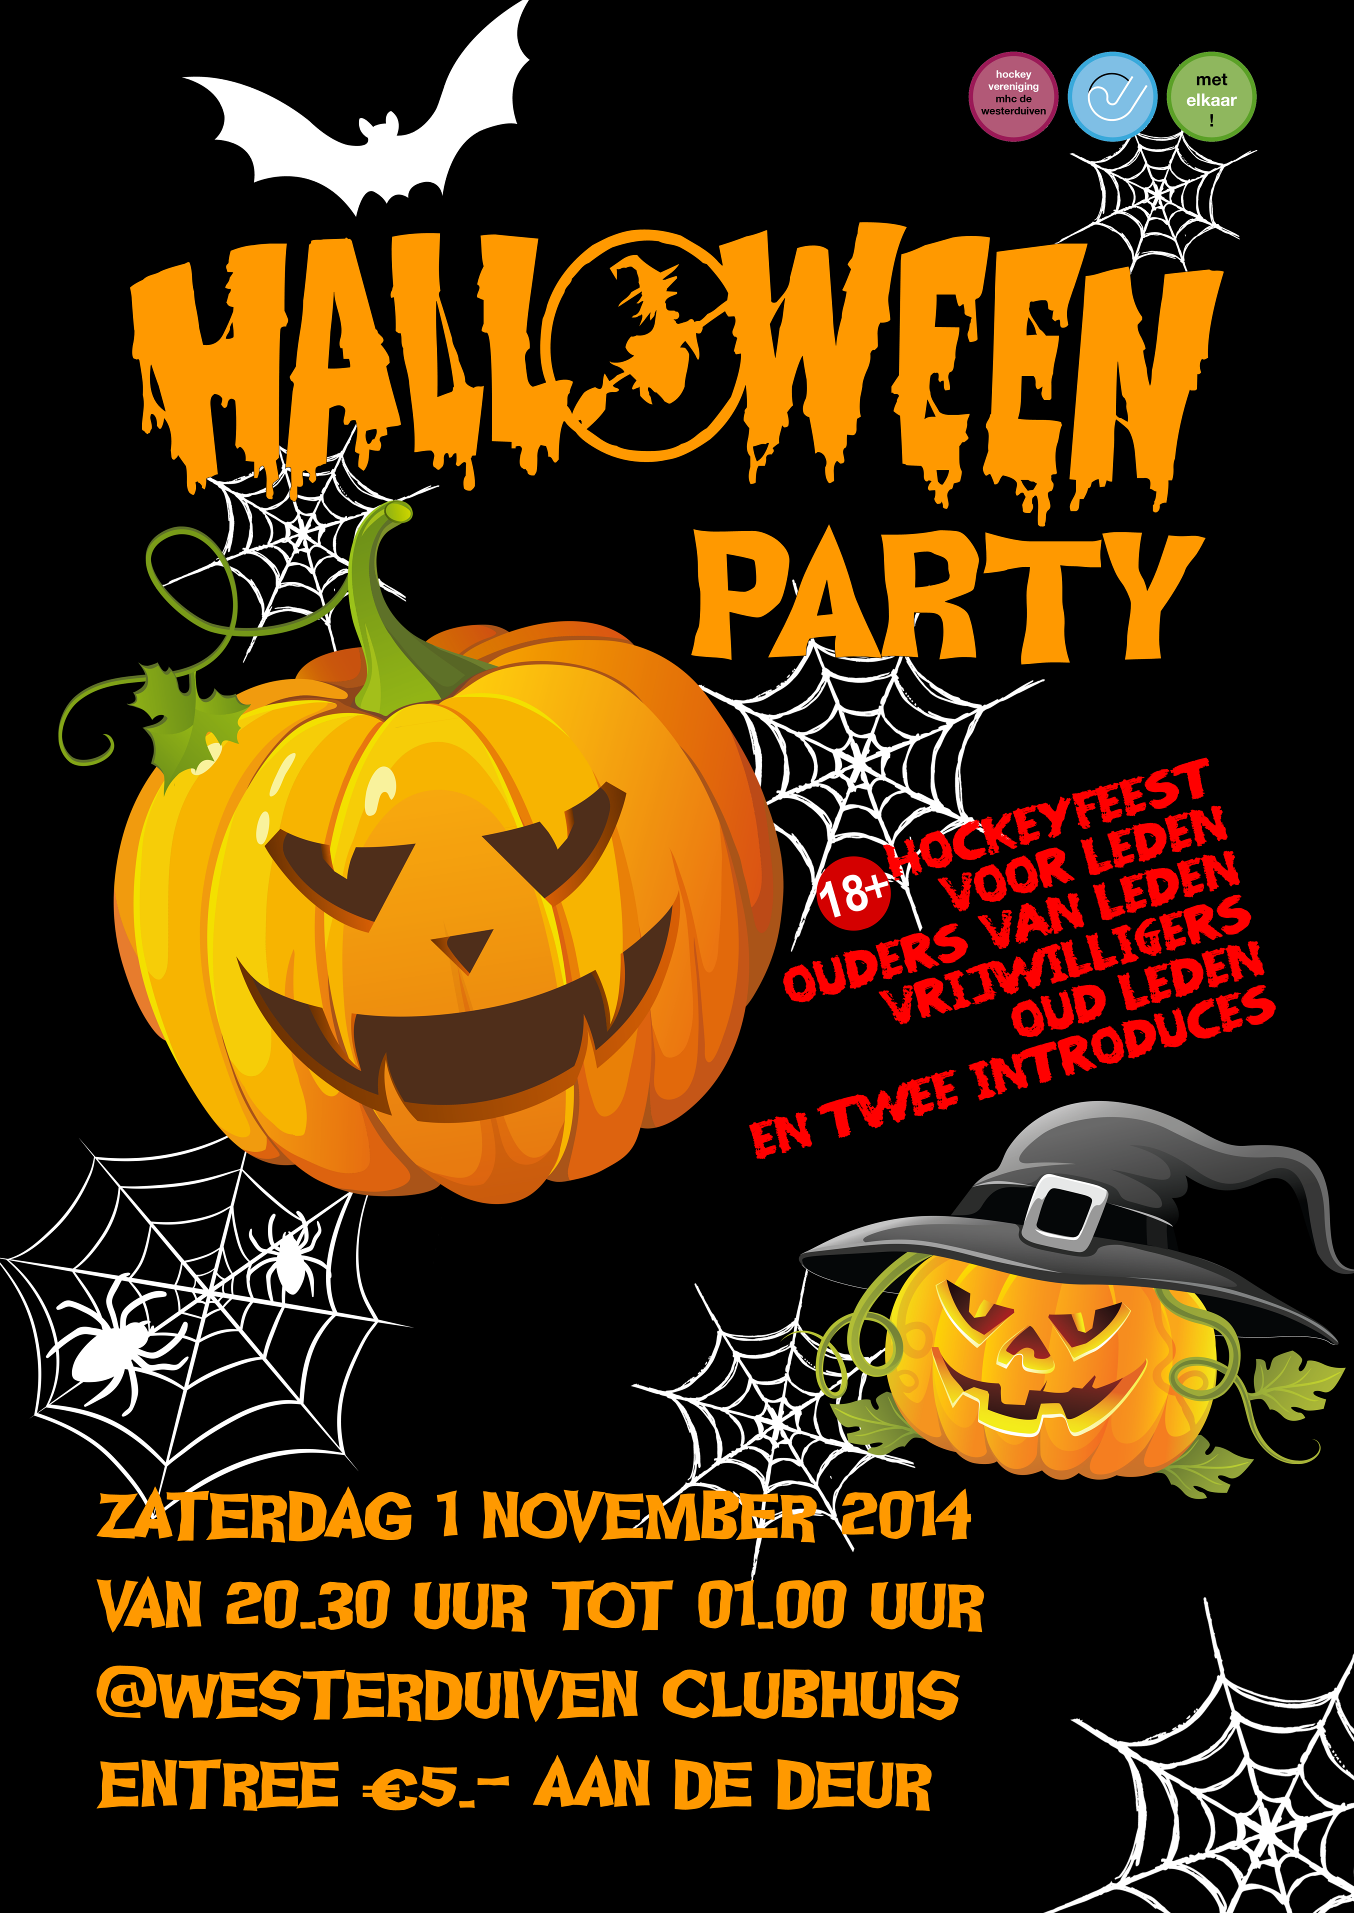 HALLOWEEN PARTY Hierbij willen wij u graag uitnodigen voor een Halloween Party op zaterdag 1 november 2014 in het clubhuis van MHC De Westerduiven!